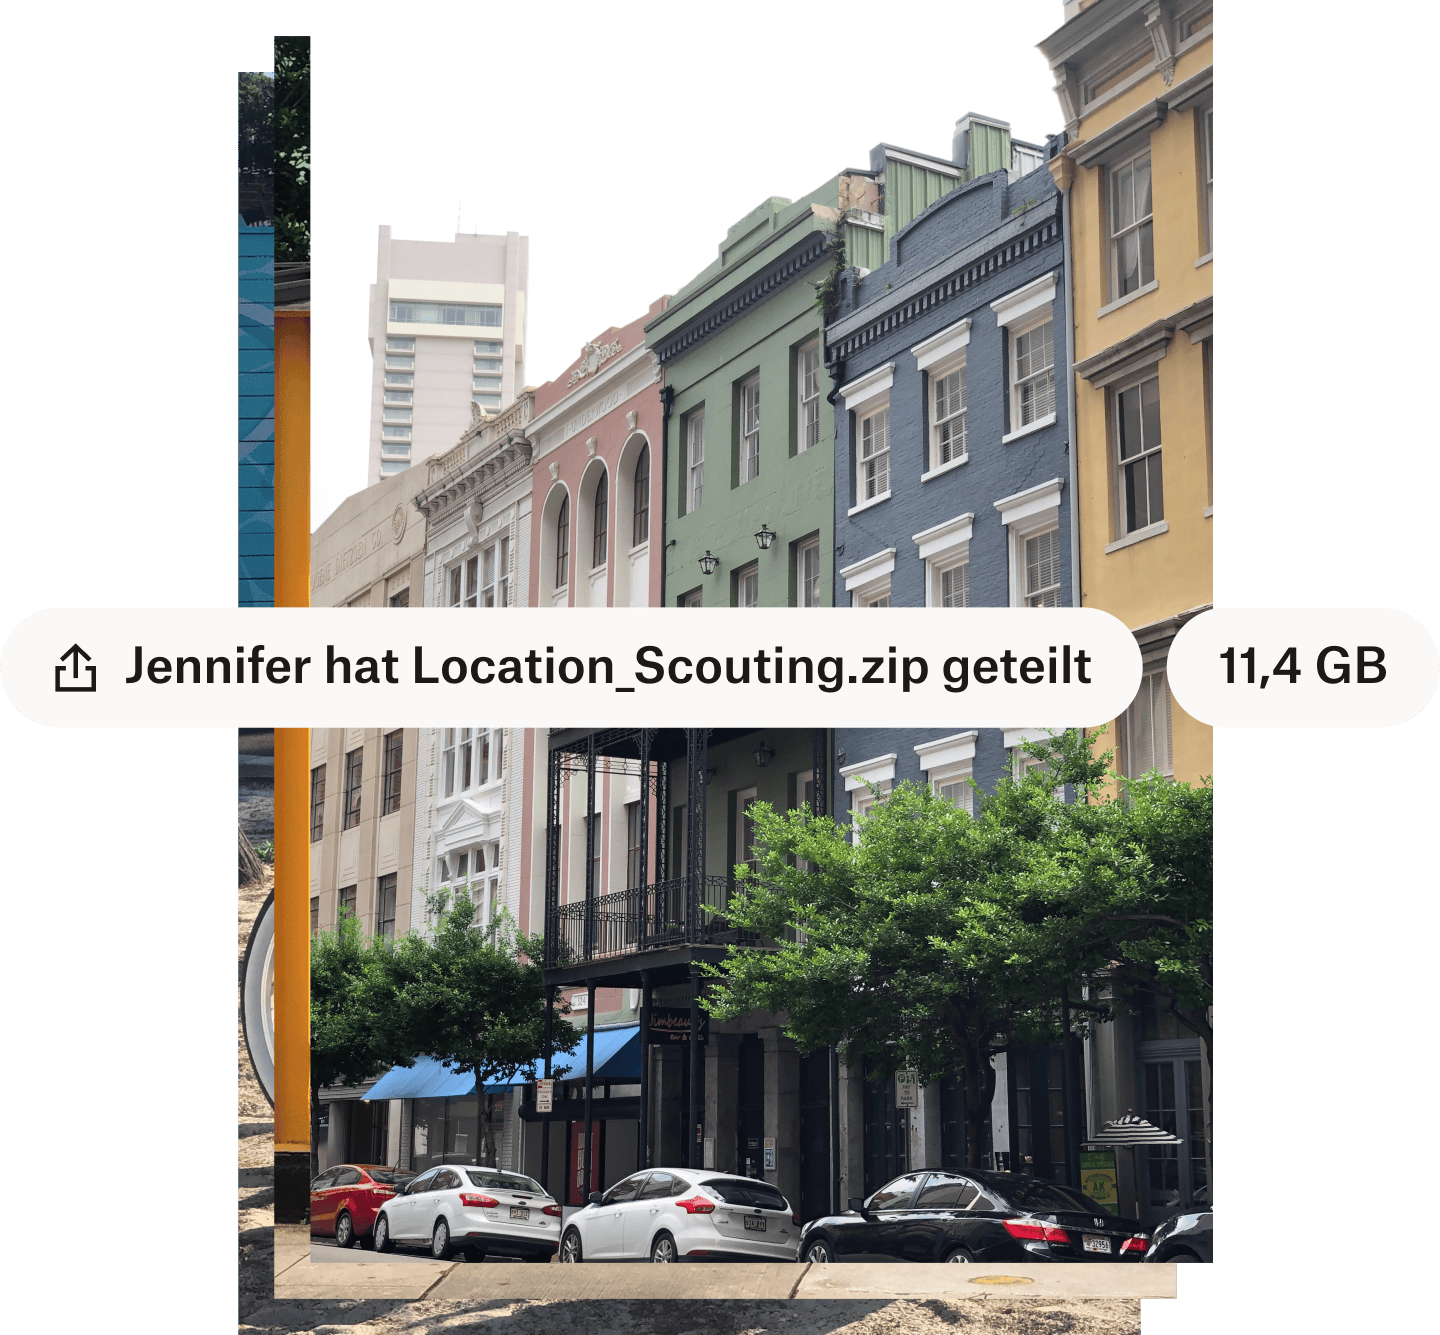 Ein Foto einer Straße in der Stadt mit farbenfrohen Gebäuden mit dem Dateinamen und der Dateigröße, die mit weißen Textblasen überlagert sind